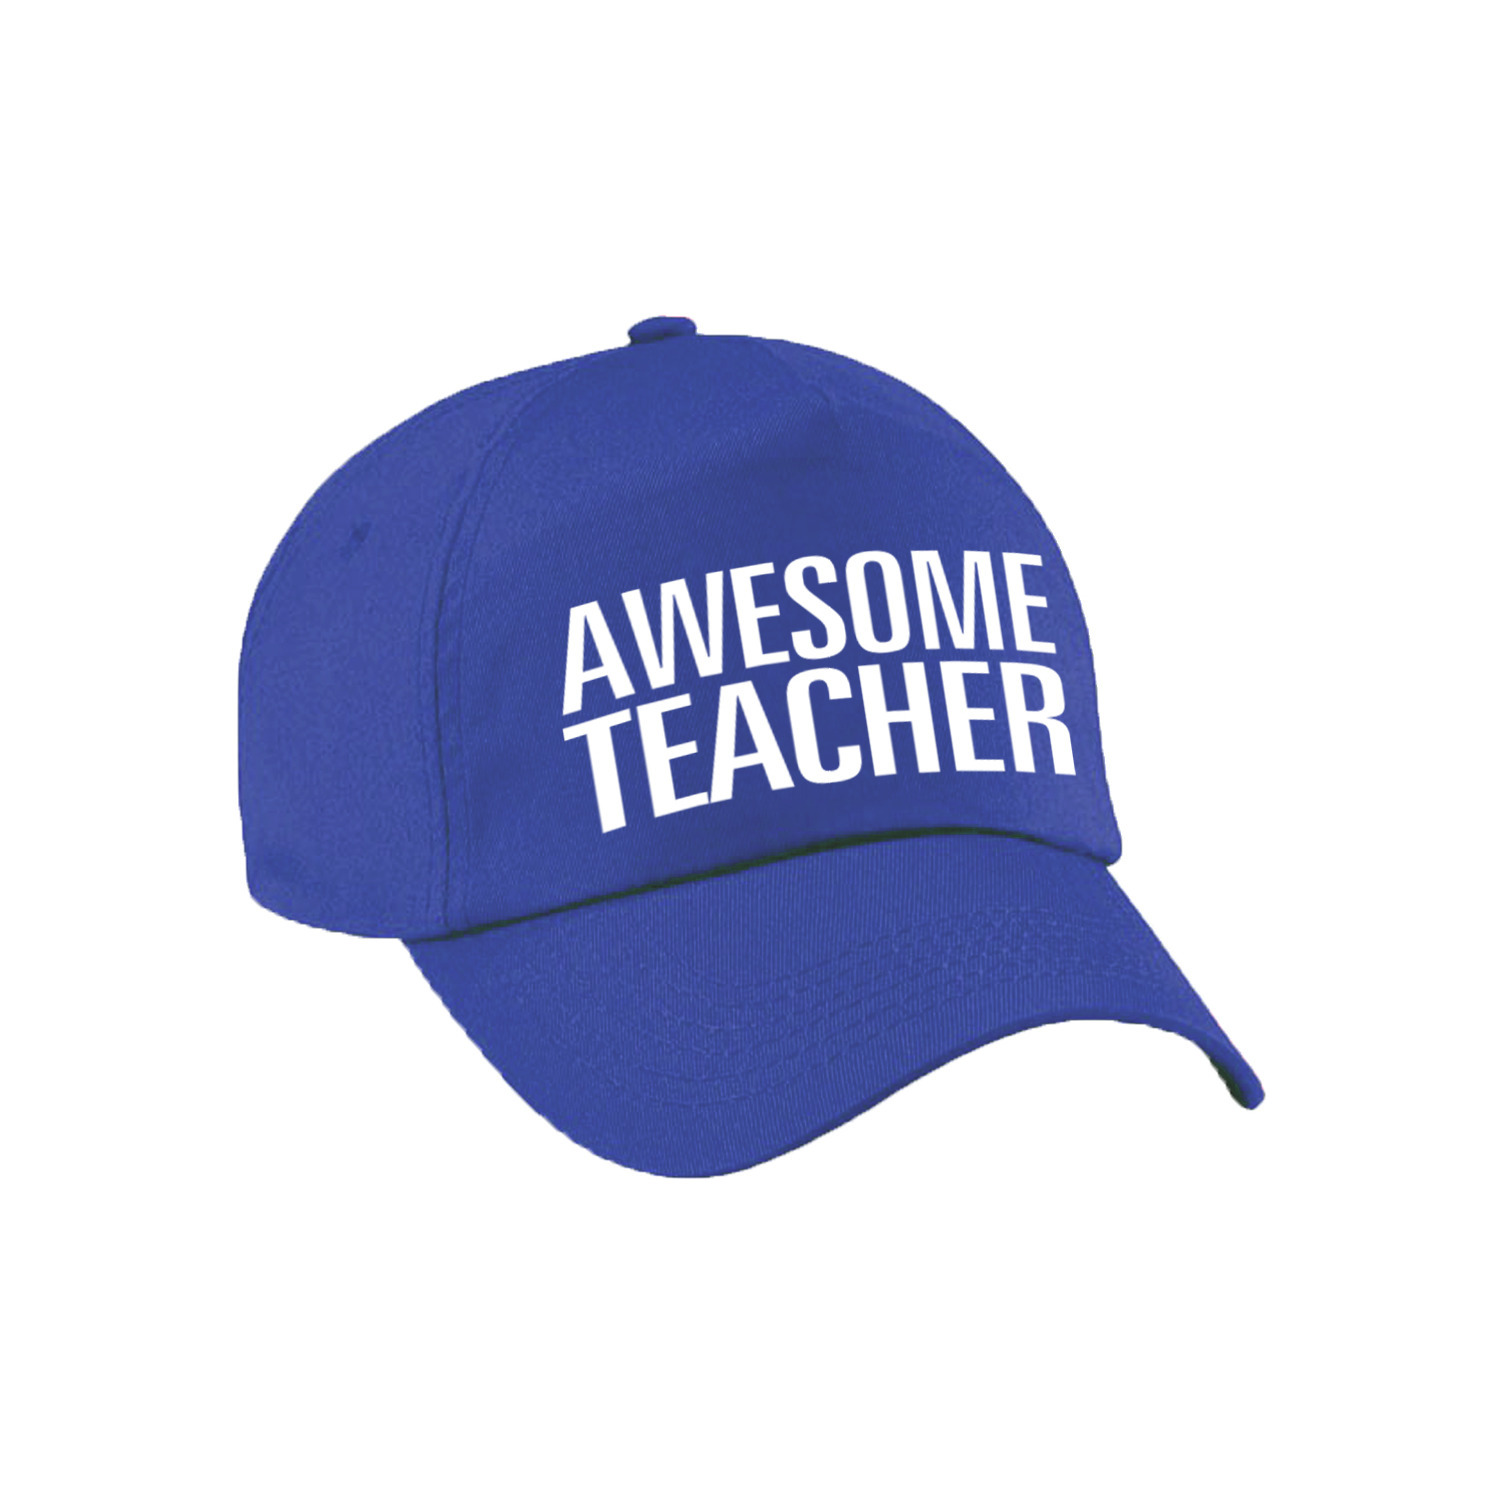 Awesome teacher pet / cap voor leraar / lerares blauw voor dames en heren